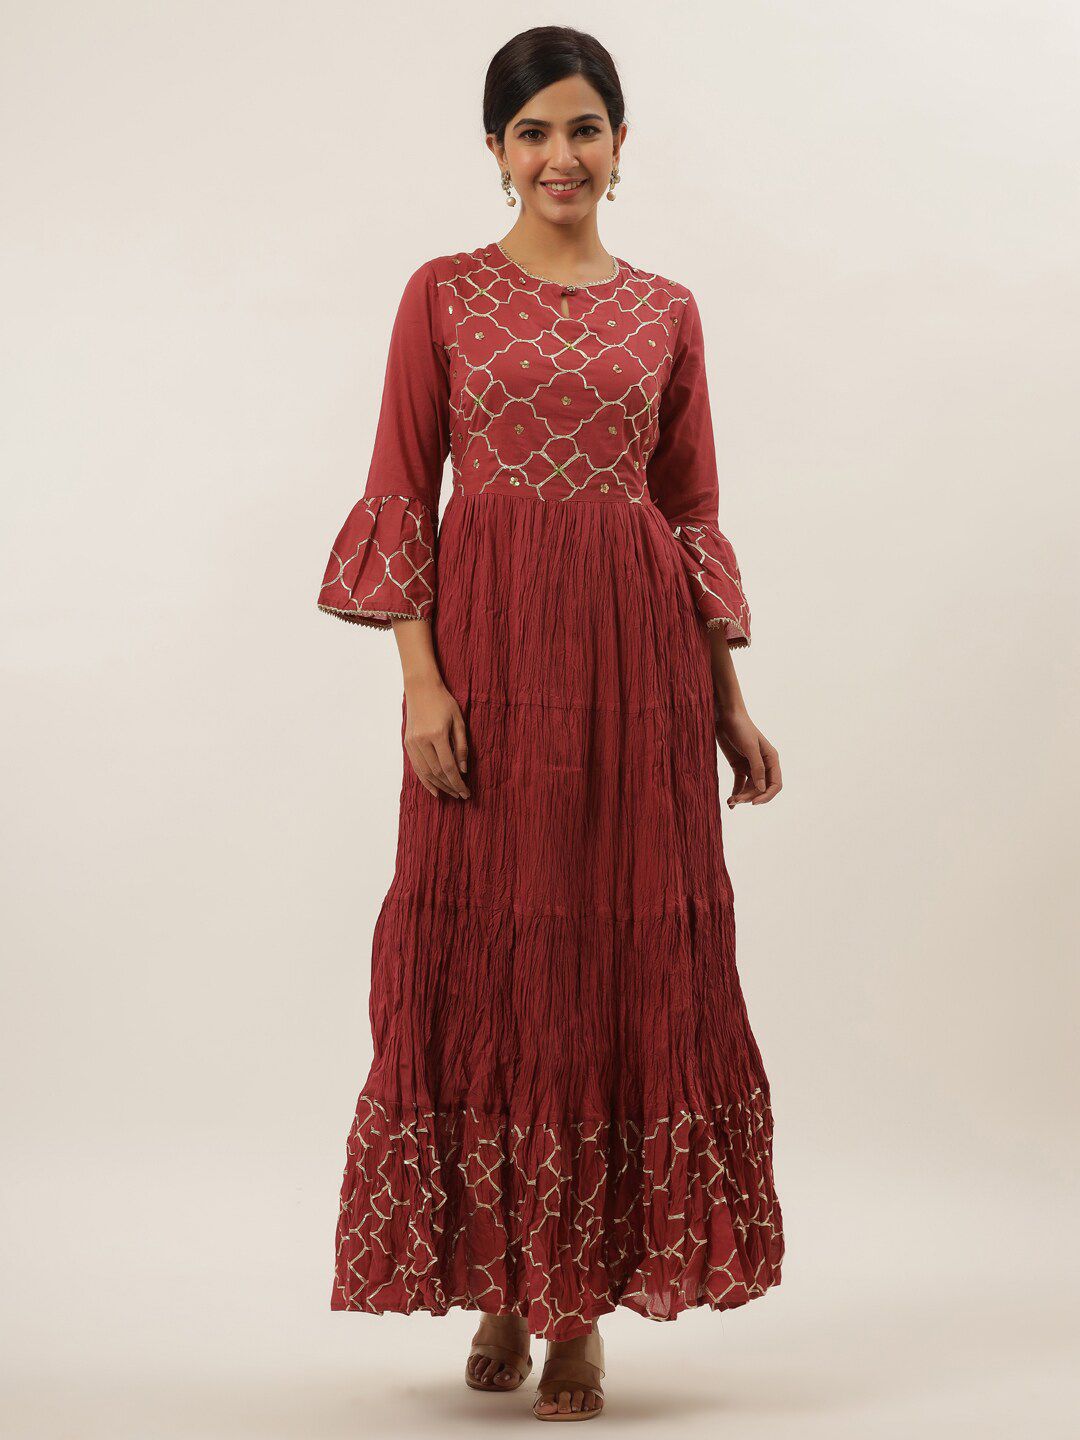 Yufta Rust Floral Ethnic Maxi Dress Price in India